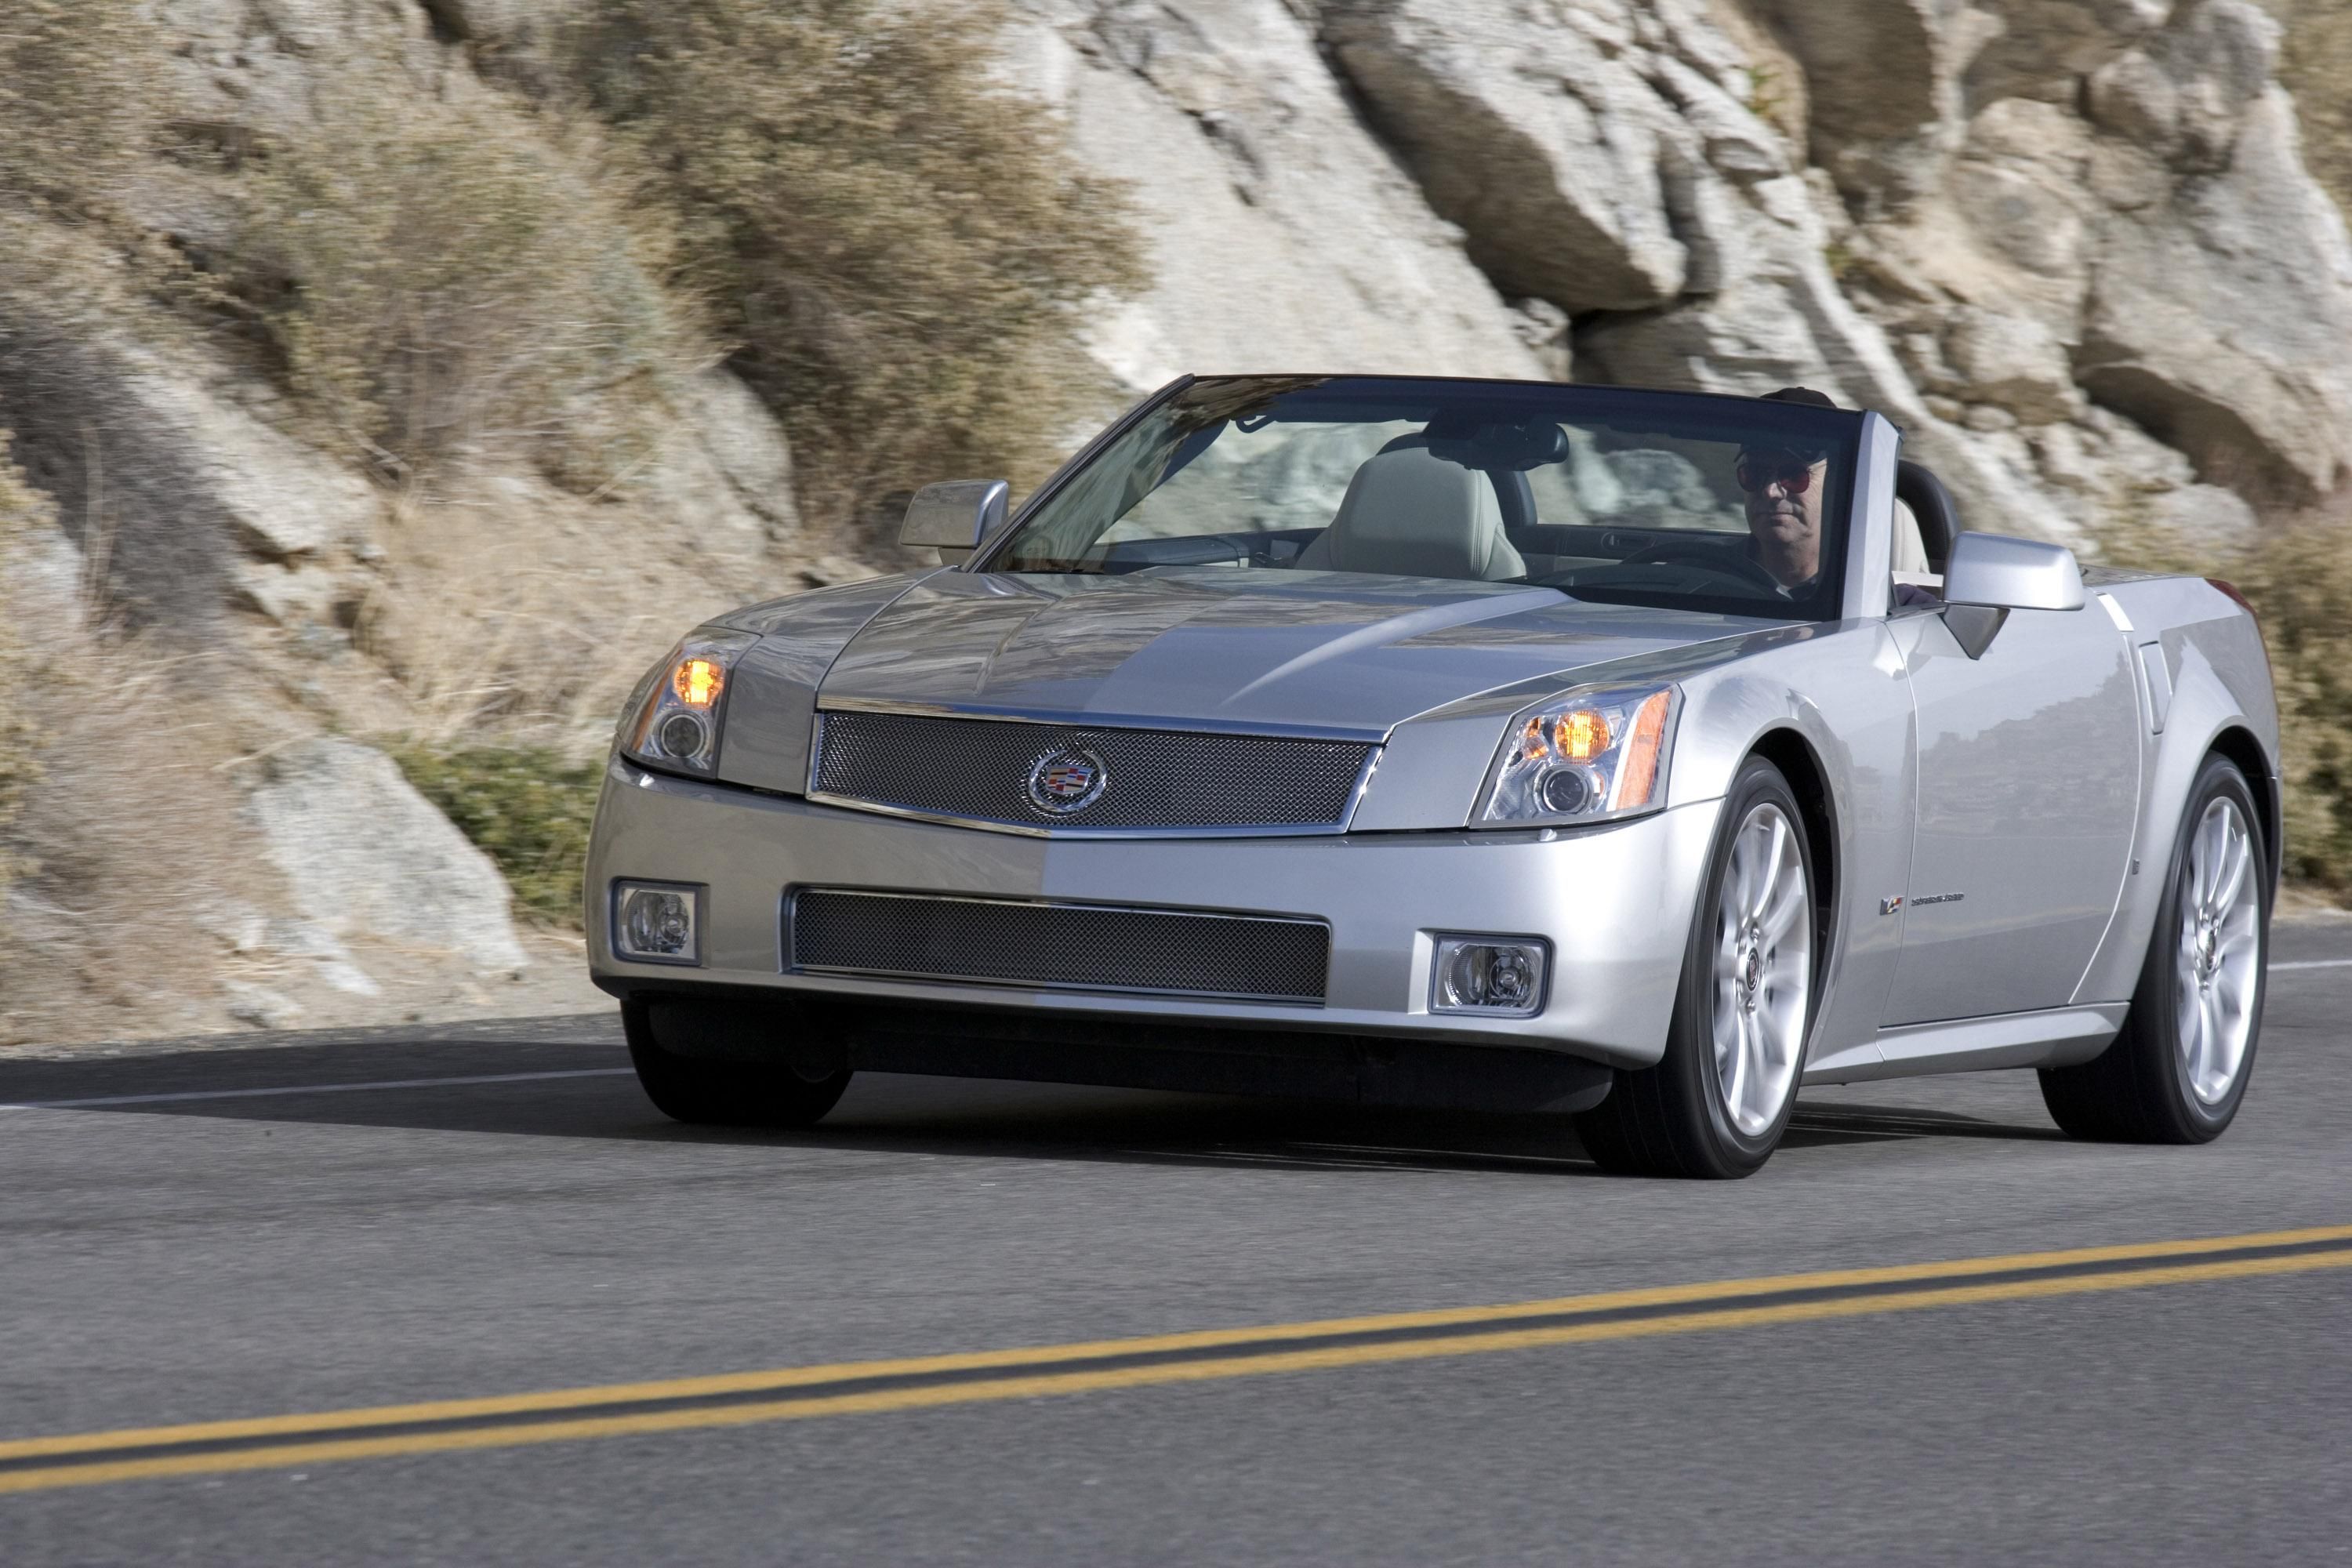 2007 Cadillac XLR-V silver front 3/4 view